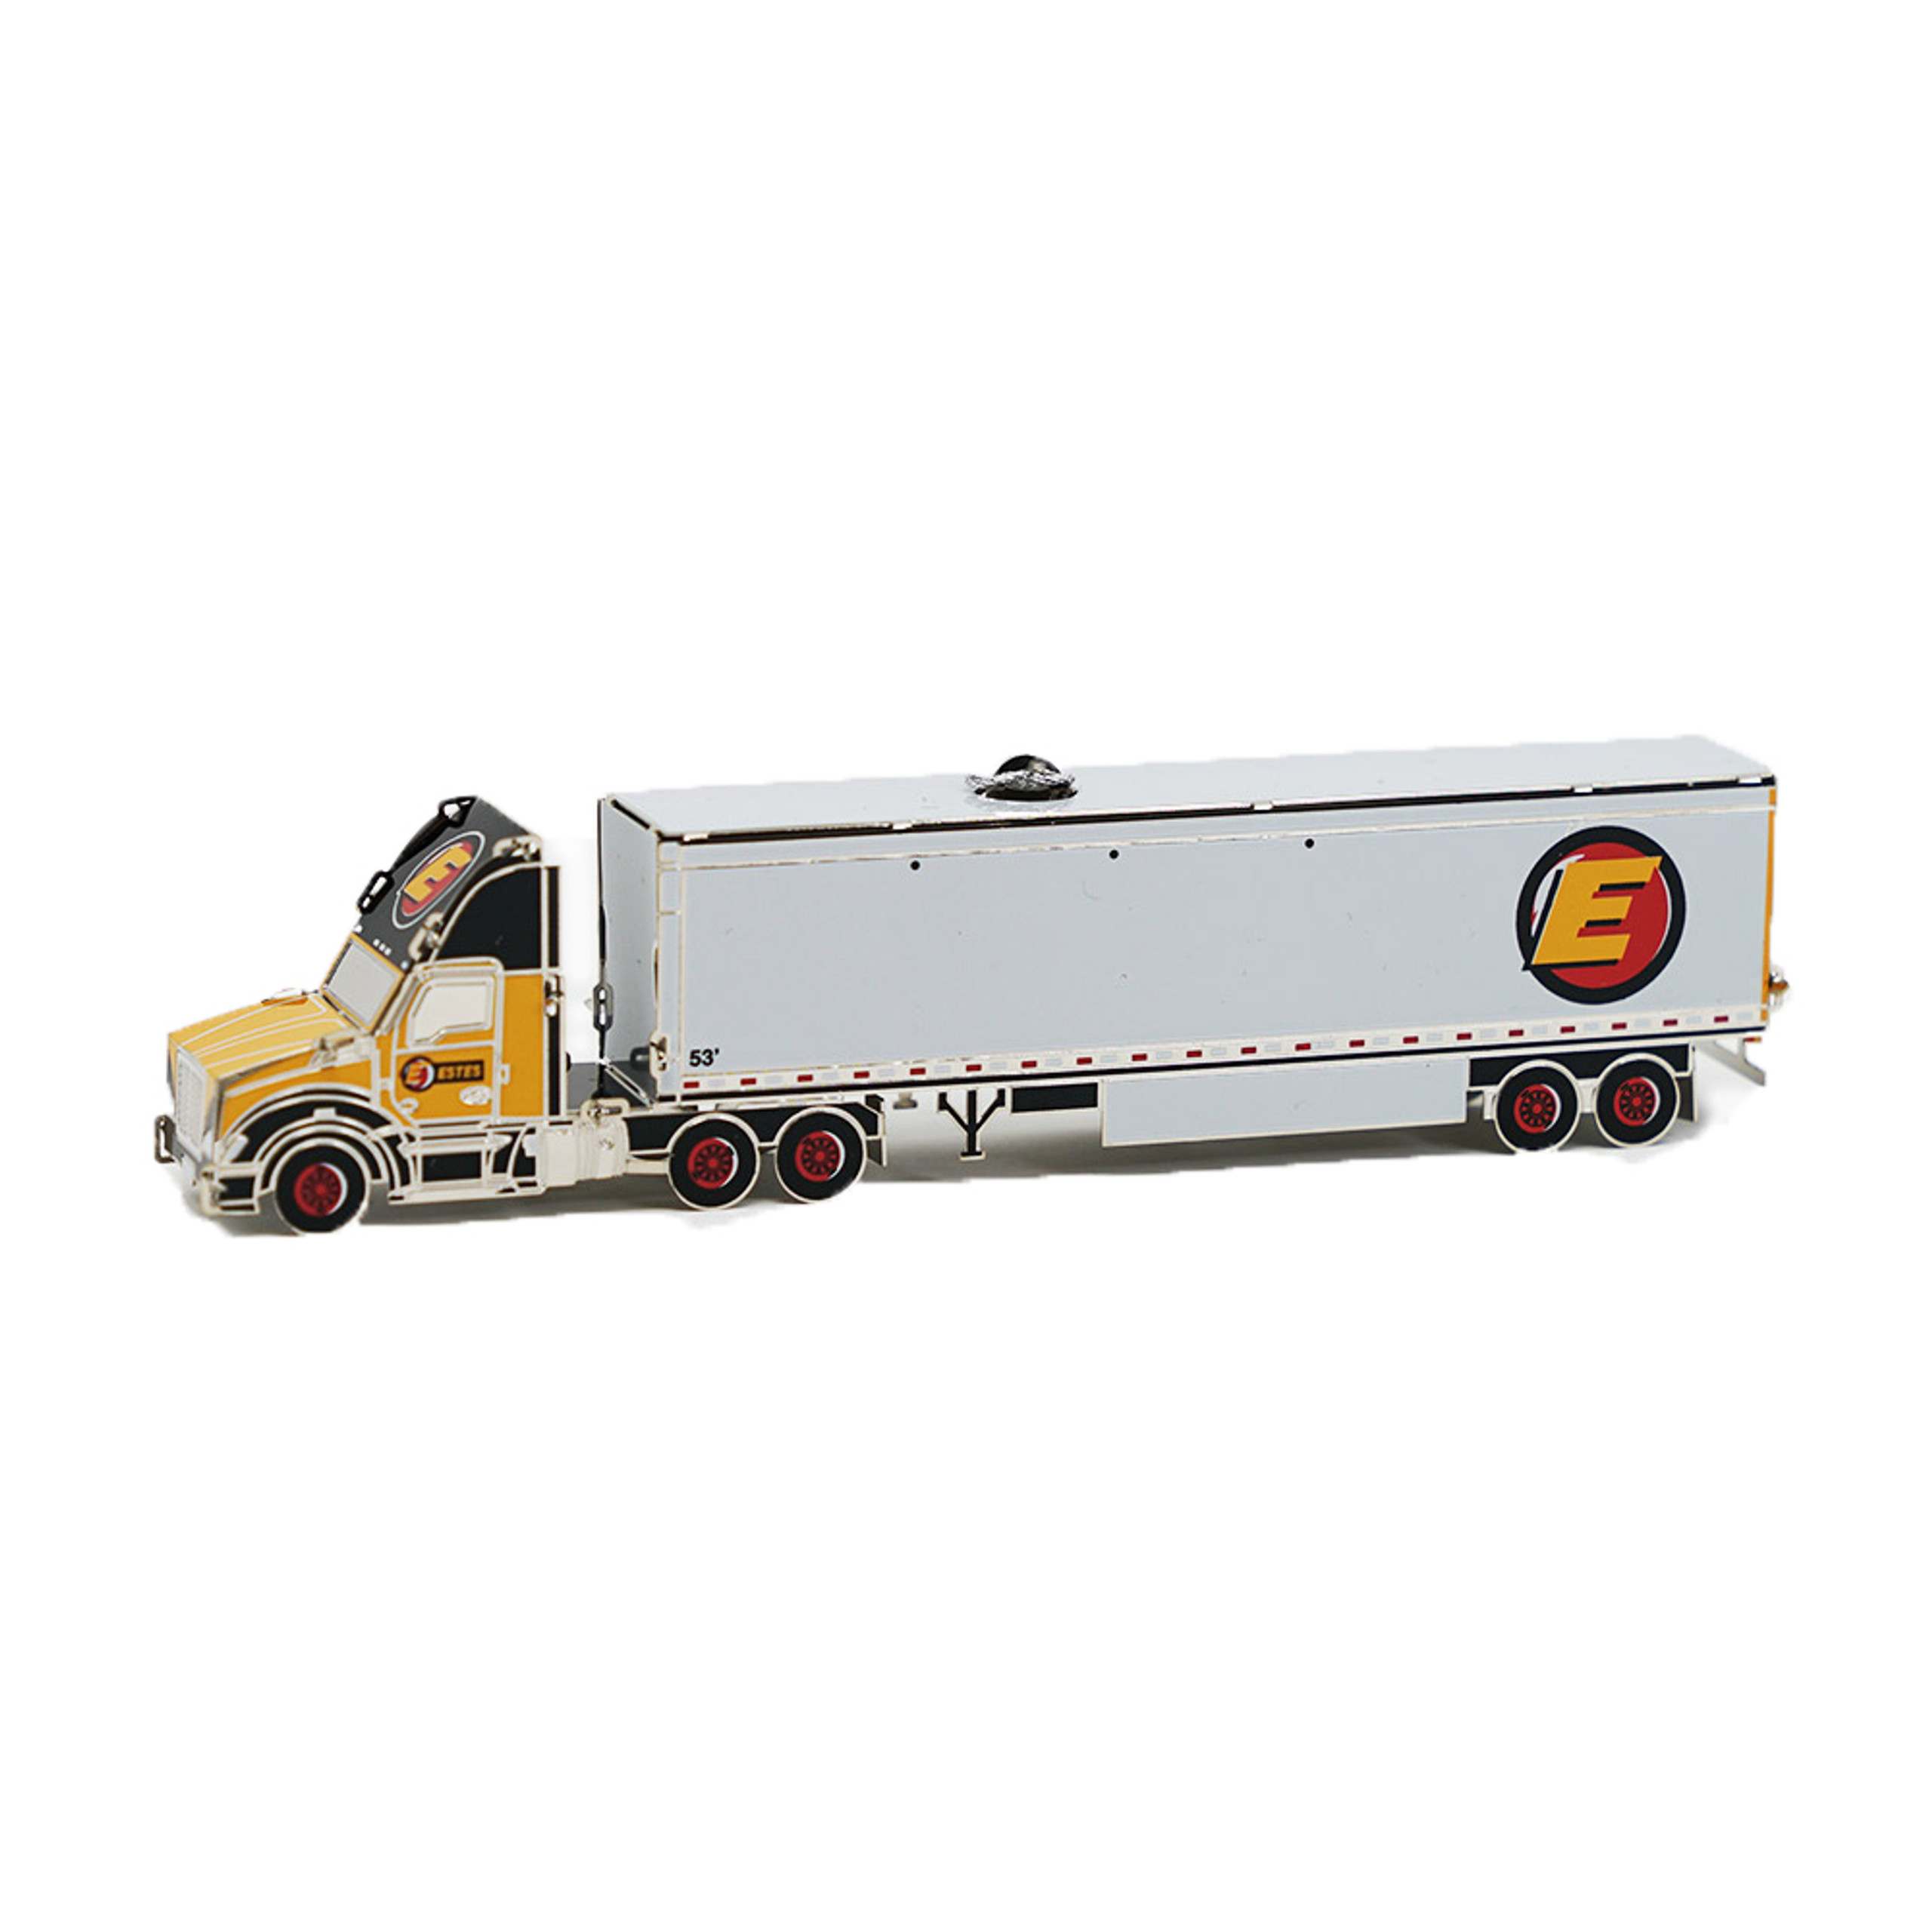 Truck Ornament - Estes Express Lines